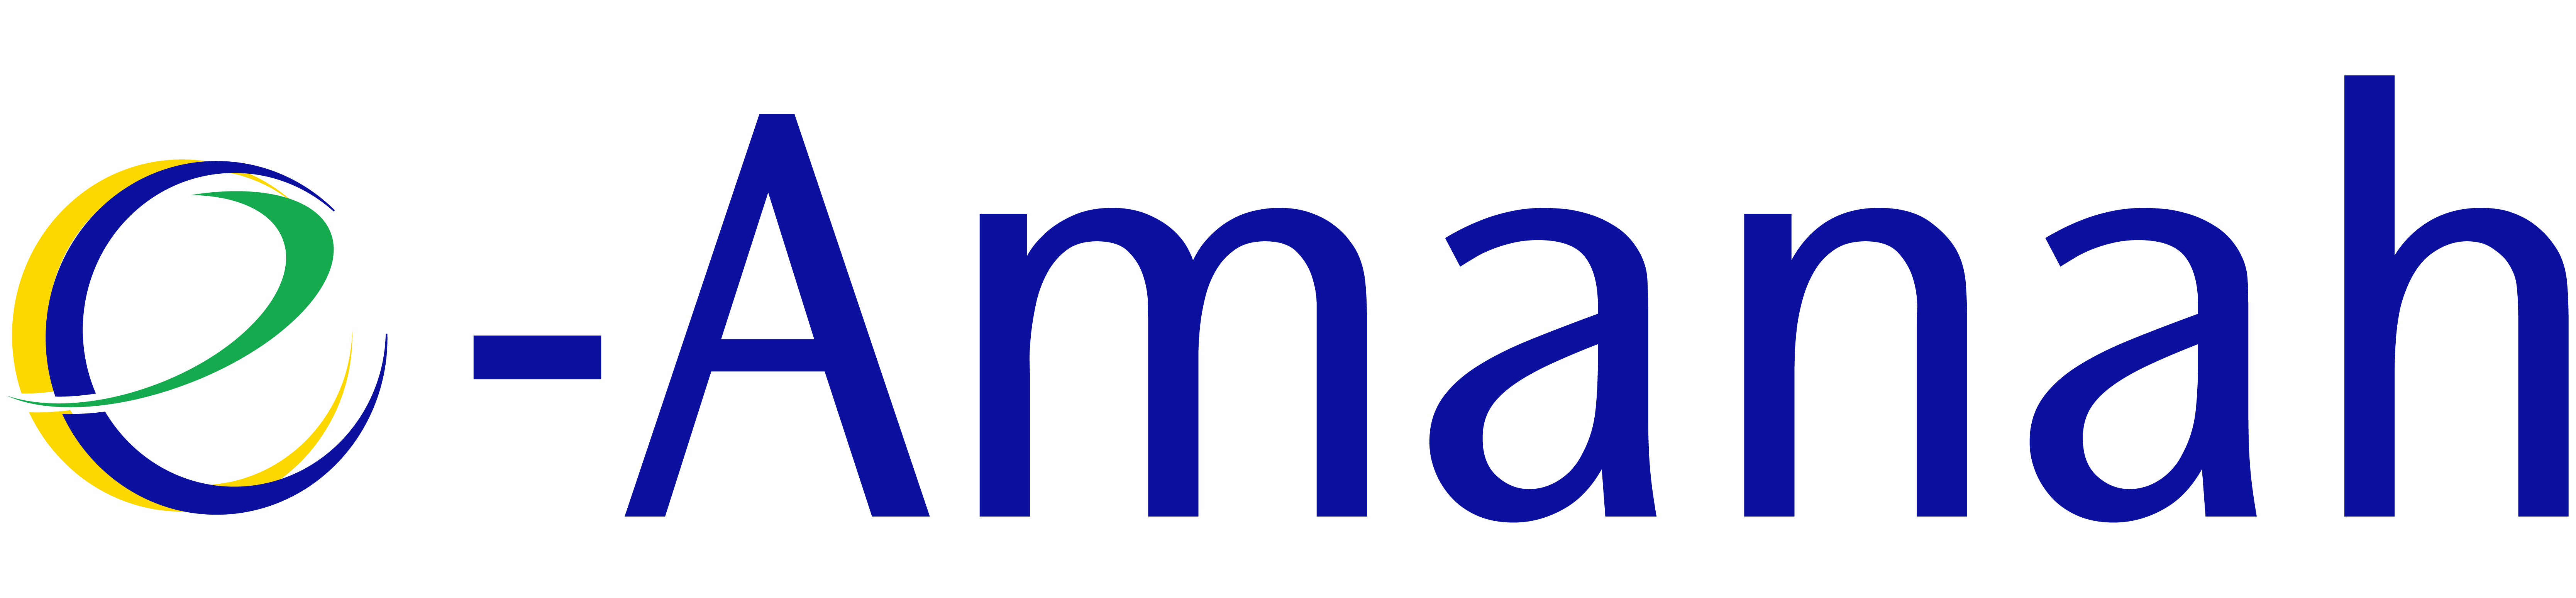 eAmanah logo2.png